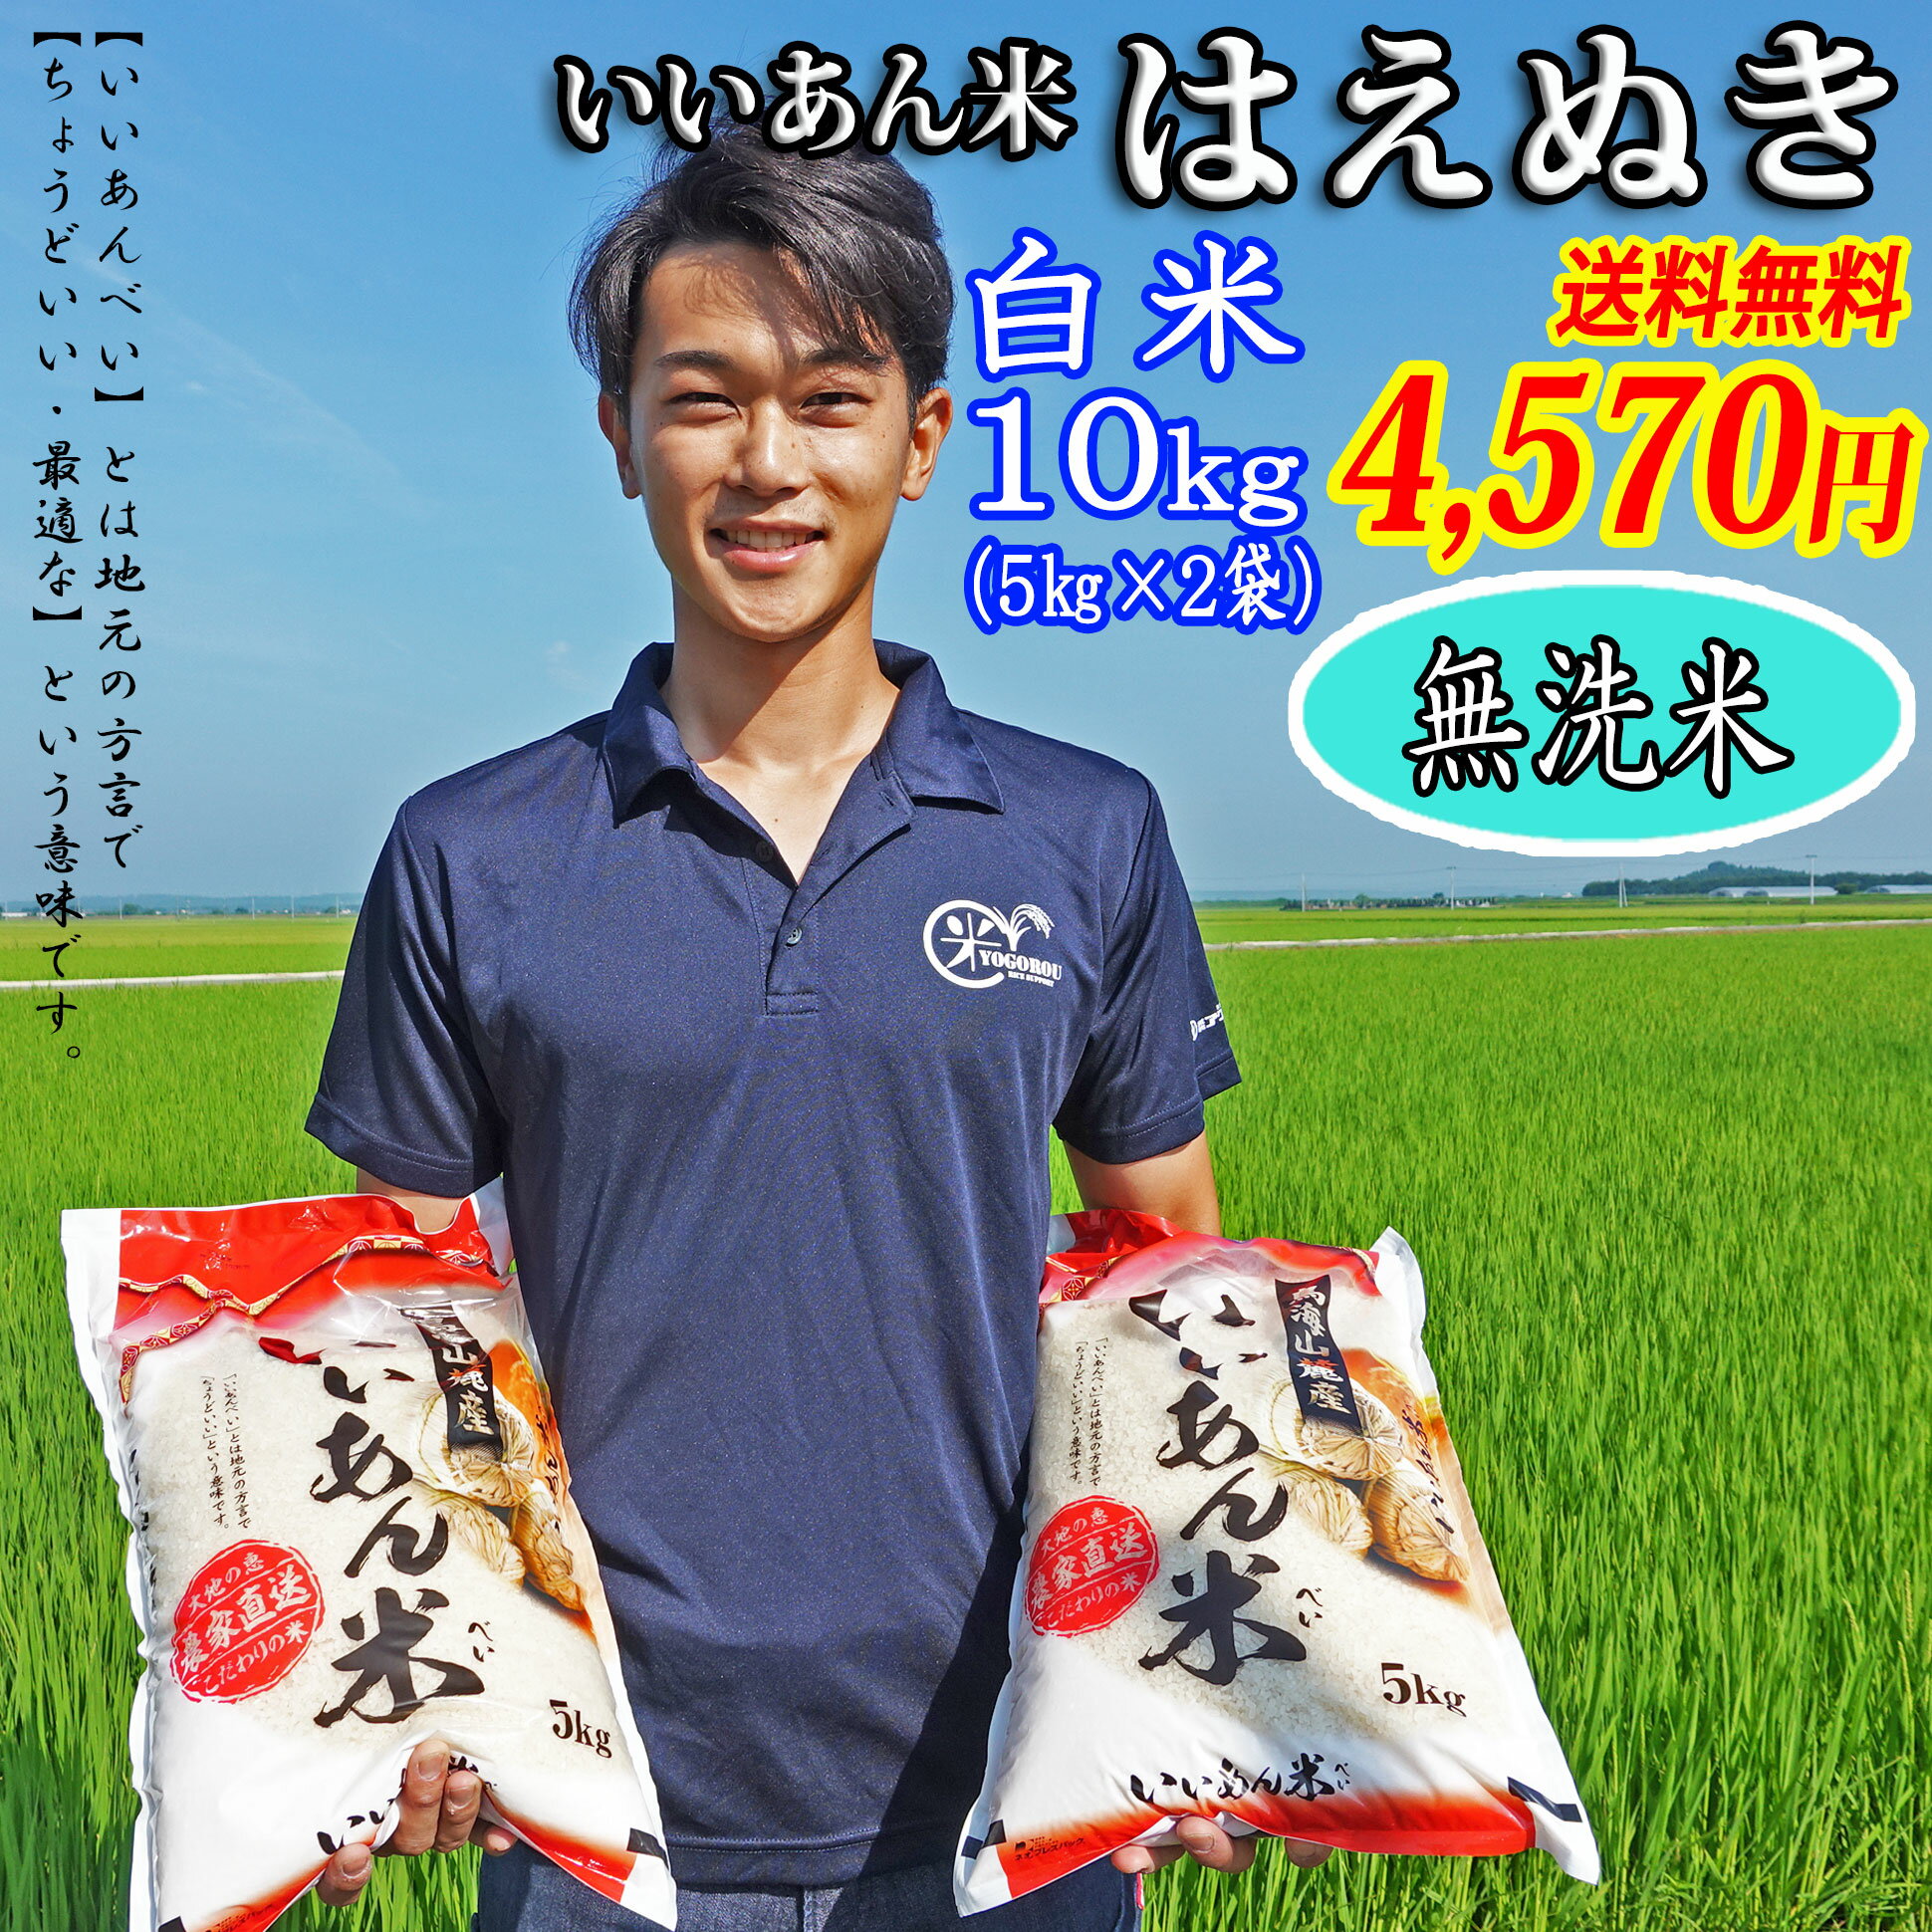 米 お米 10kg 送料無料 5kg×2袋 無洗米 白米 はえぬき いいあん米 令和3年産 山形 庄内